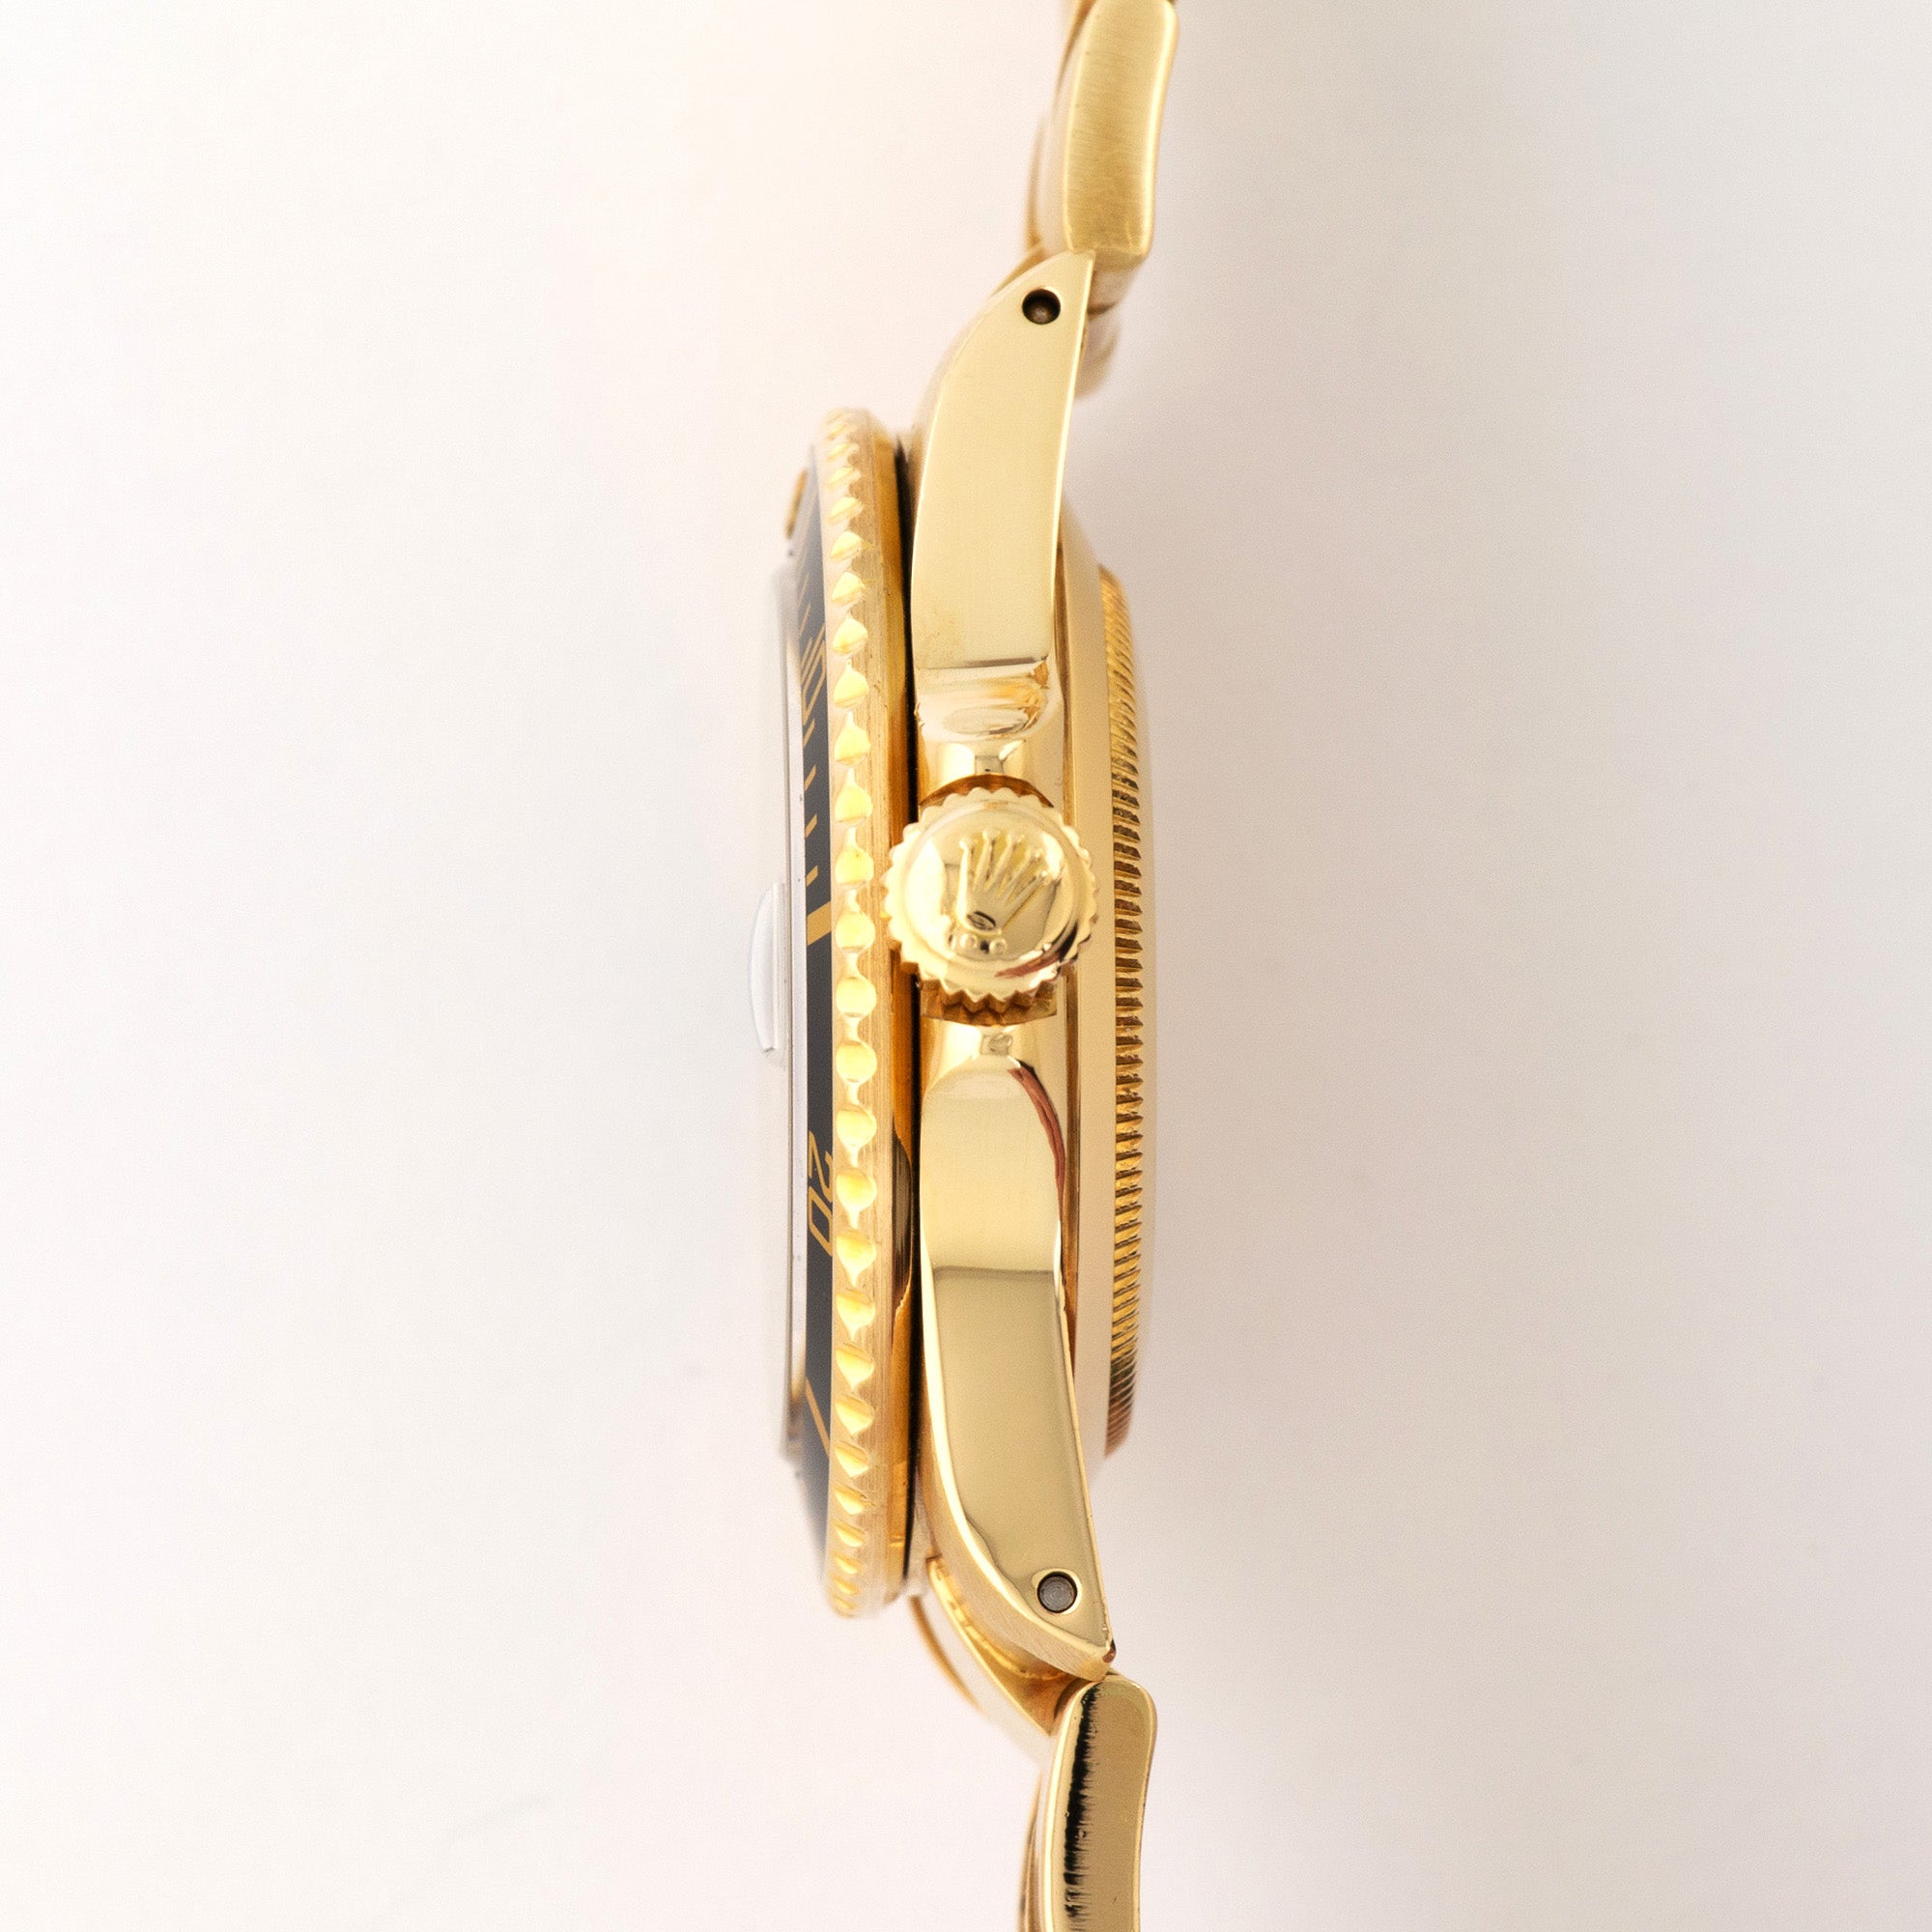 Rolex - Rolex Yellow Gold Submariner Watch Ref. 16808 - The Keystone Watches